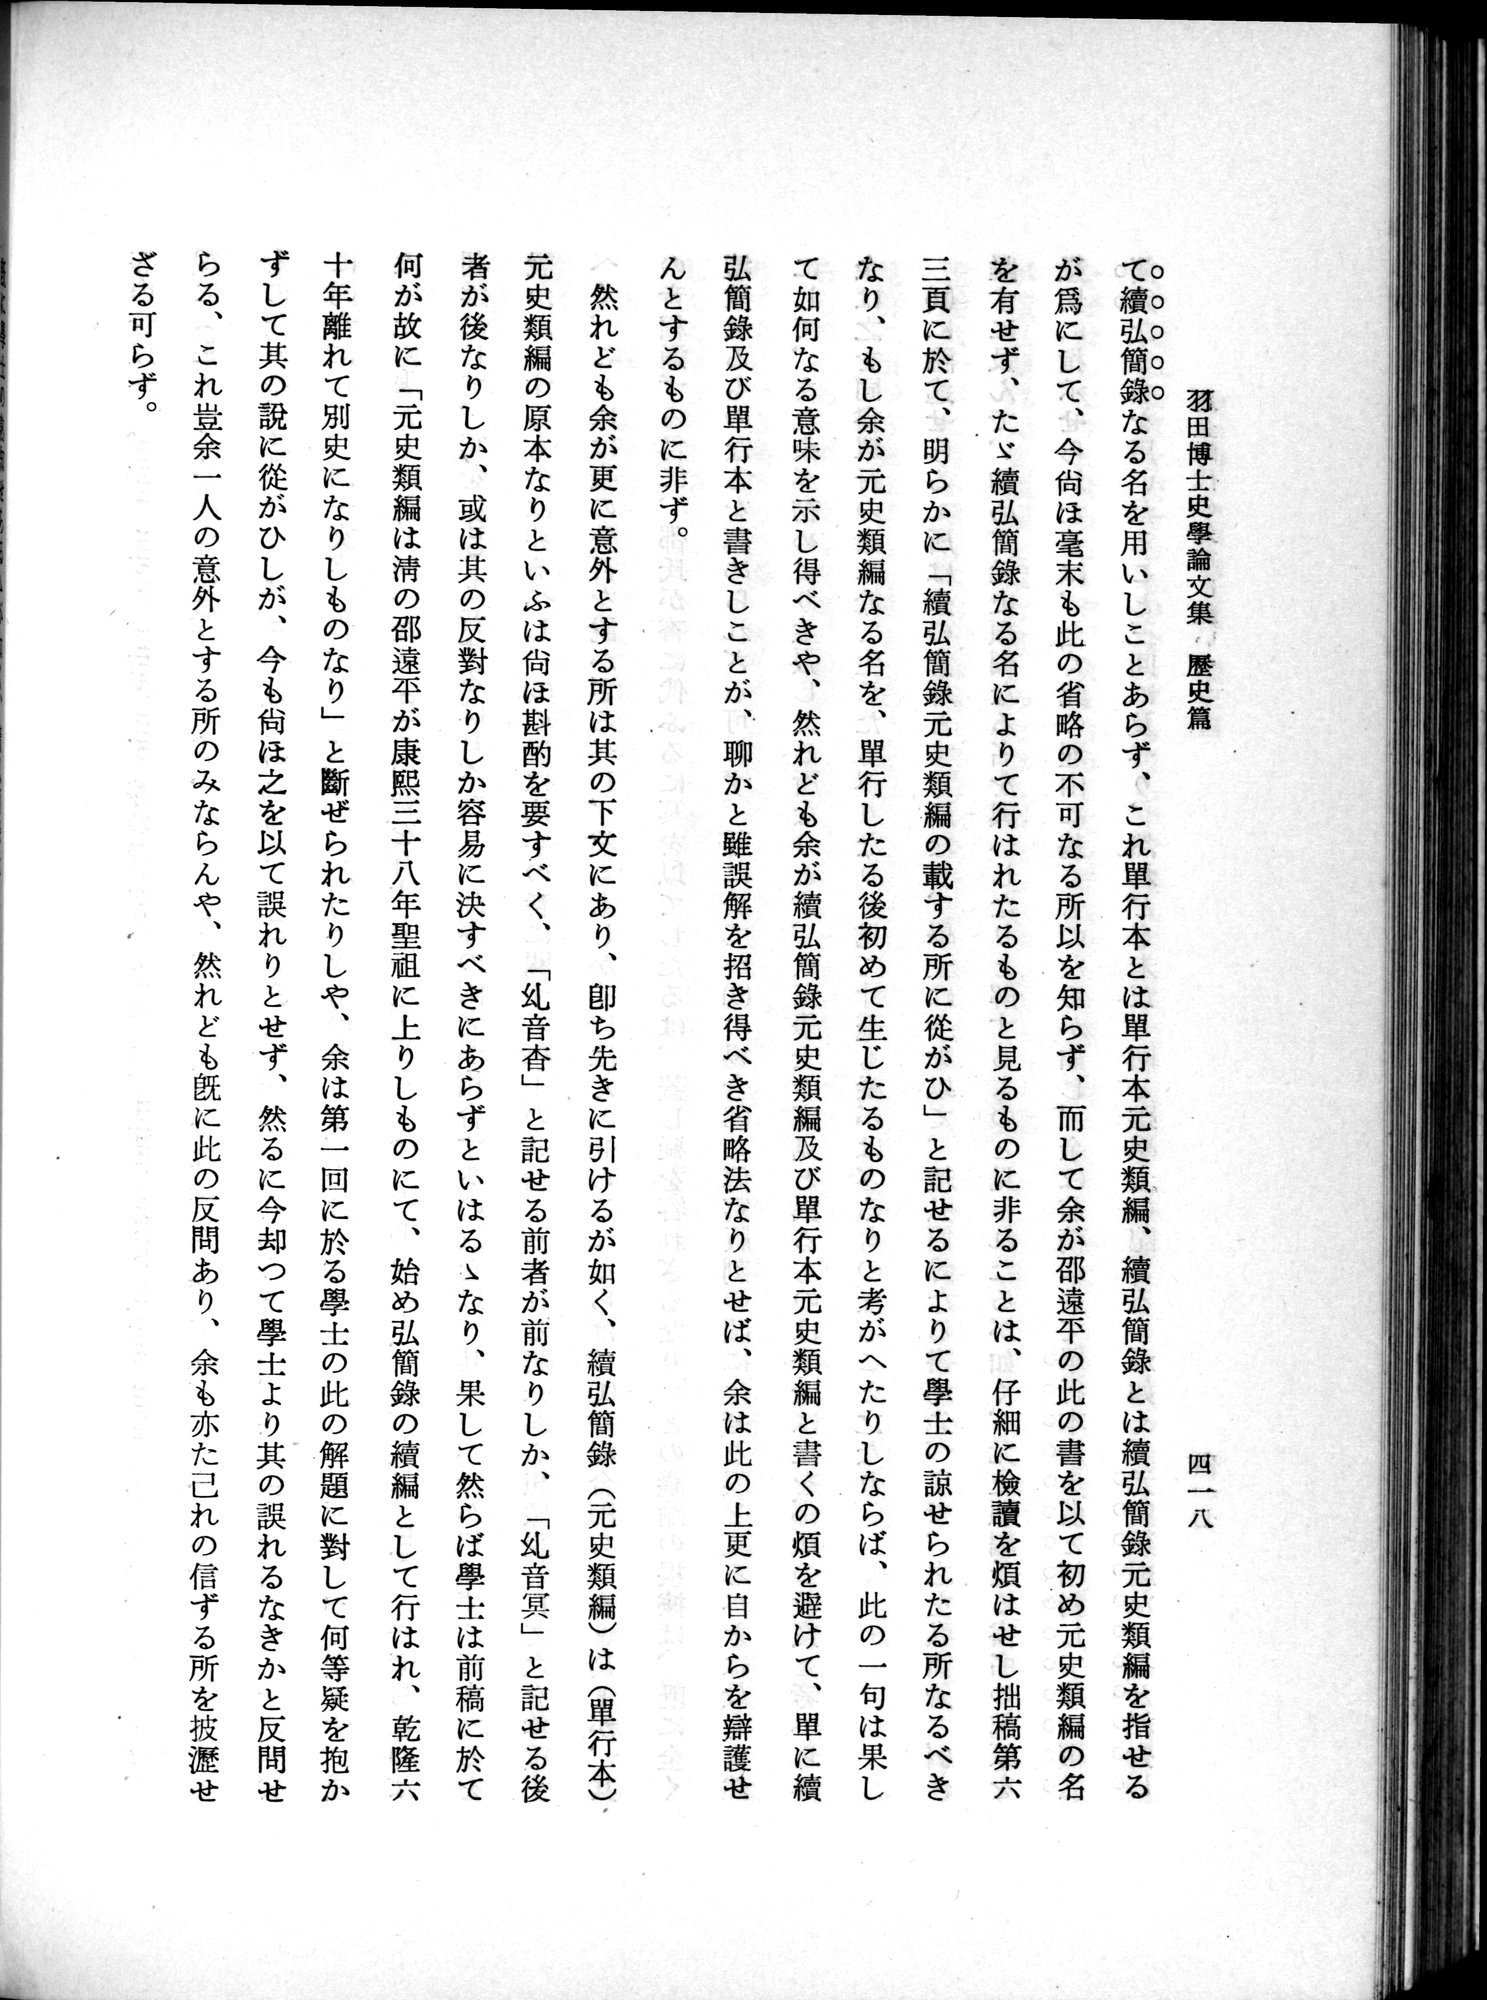 羽田博士史学論文集 : vol.1 / Page 456 (Grayscale High Resolution Image)